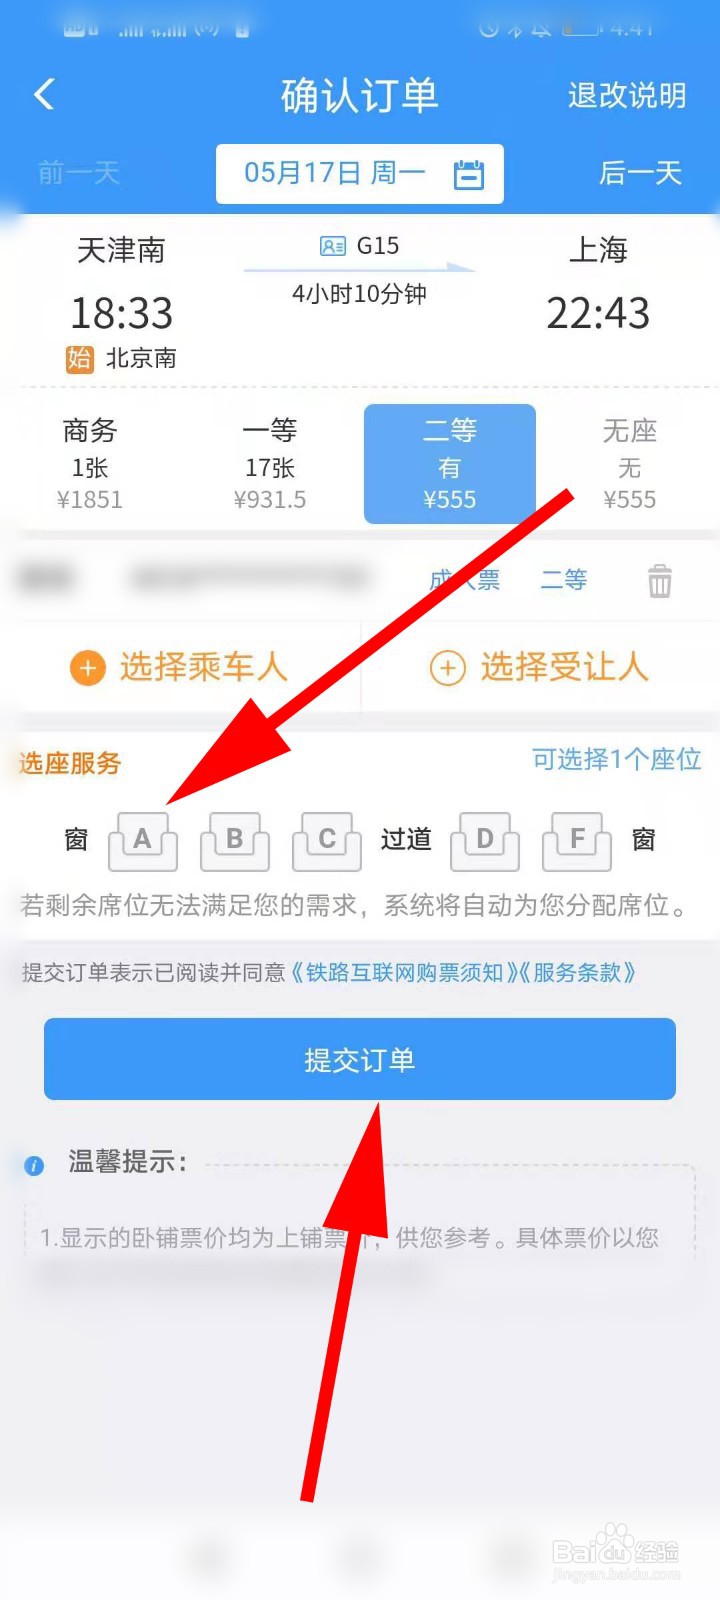 中国铁路网上订票12306怎么买学生票_12306铁路订票_12306订票失败没有足够的票